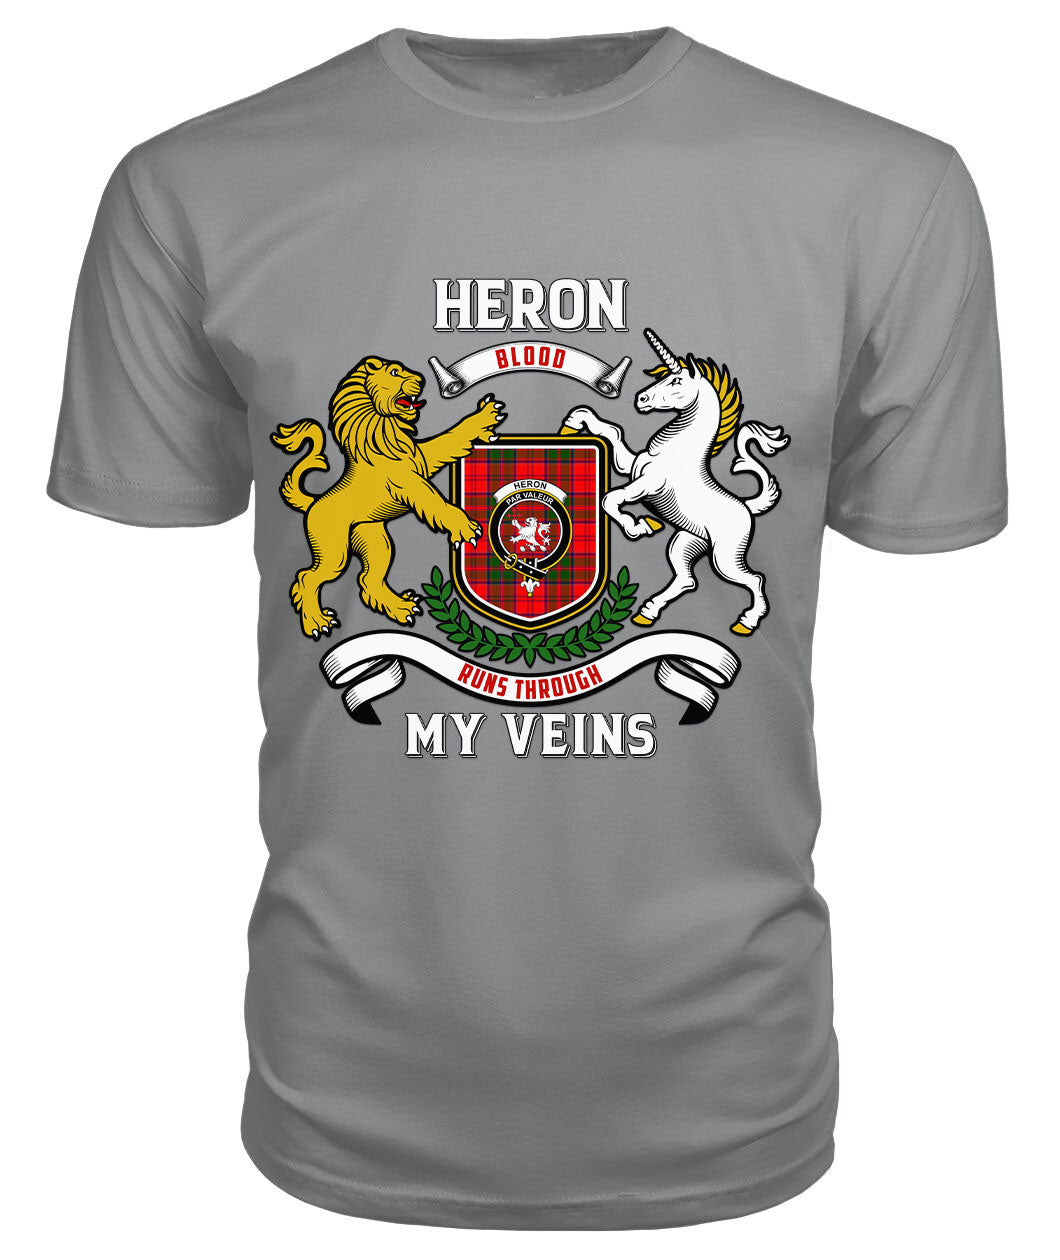 Heron Tartan Crest 2D T-shirt - Blood Runs Through My Veins Style